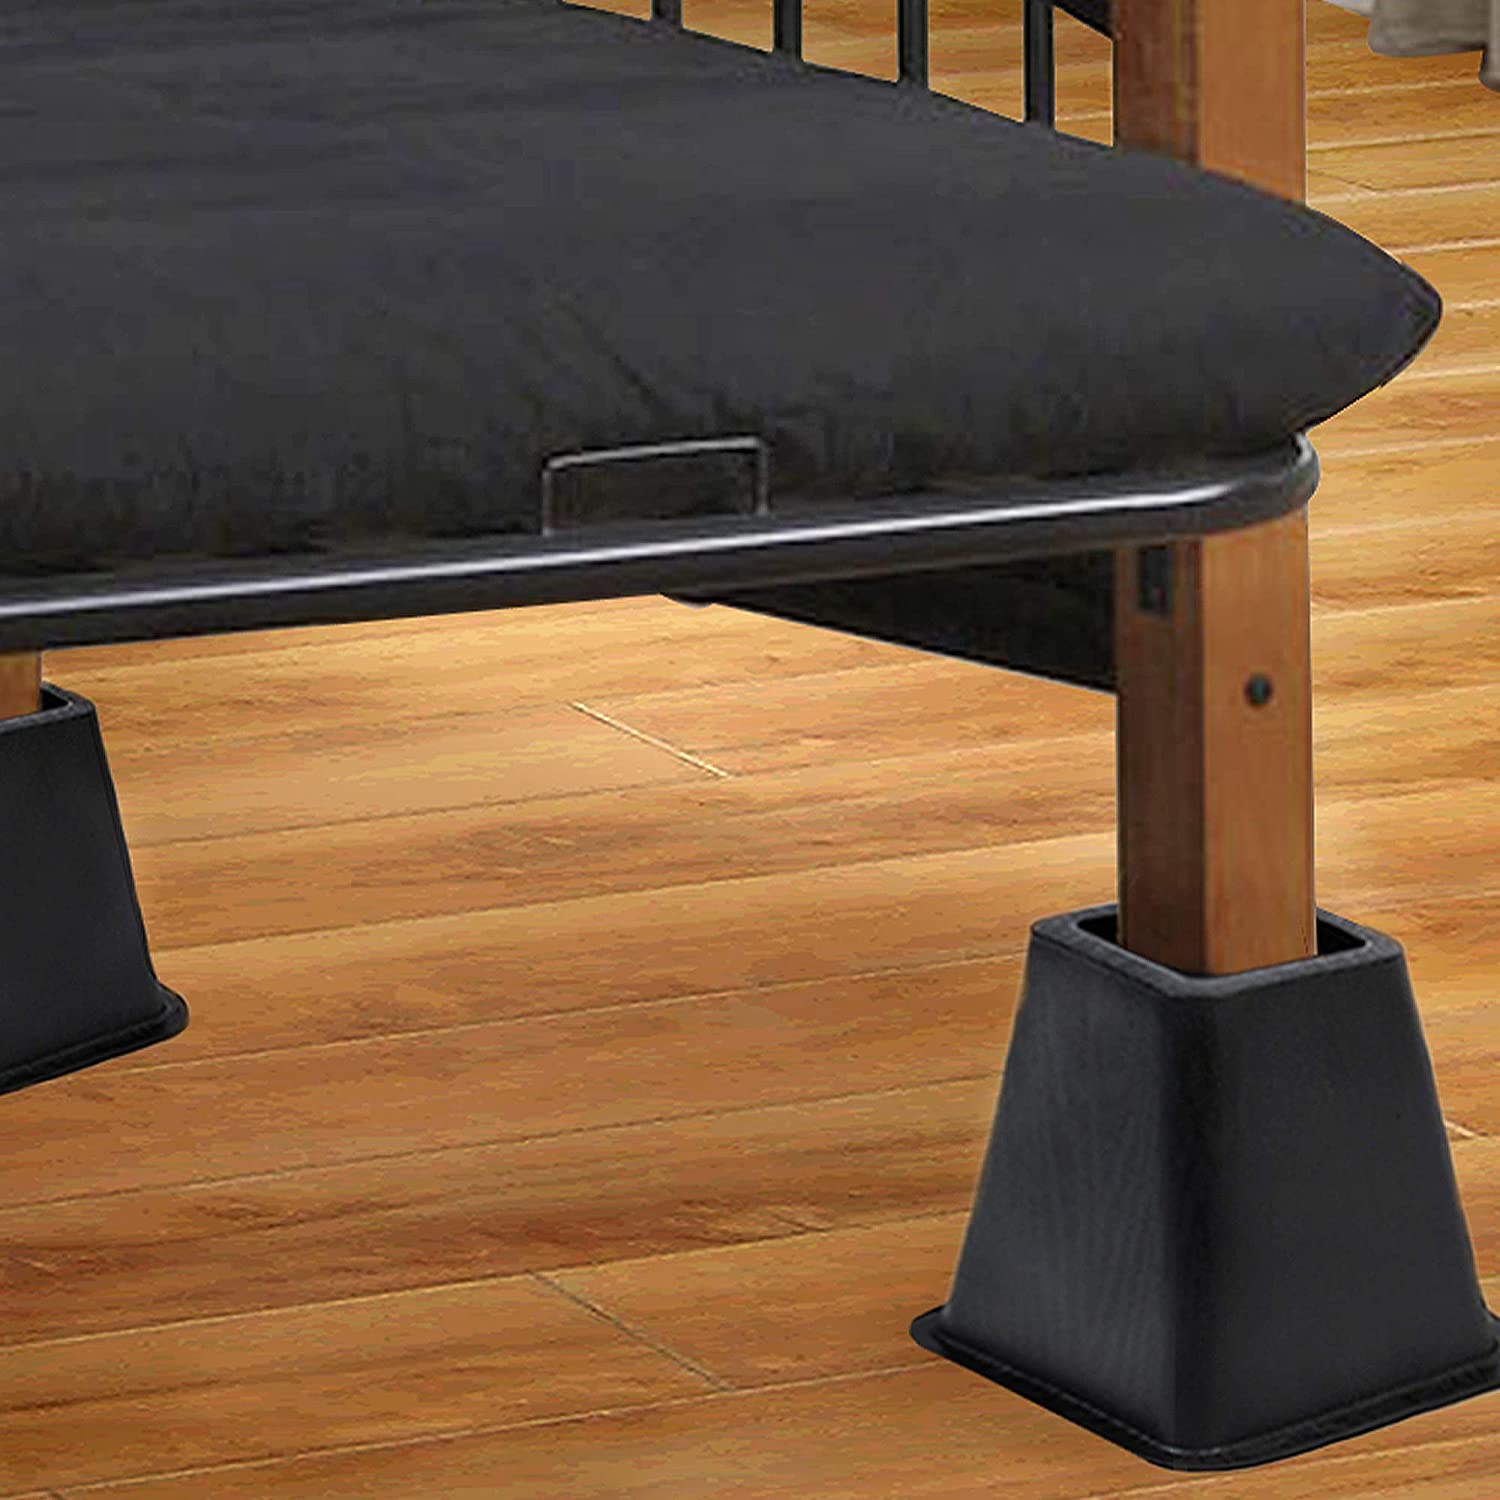 Bed Risers Set of 4 - Black - Smart Design® 3